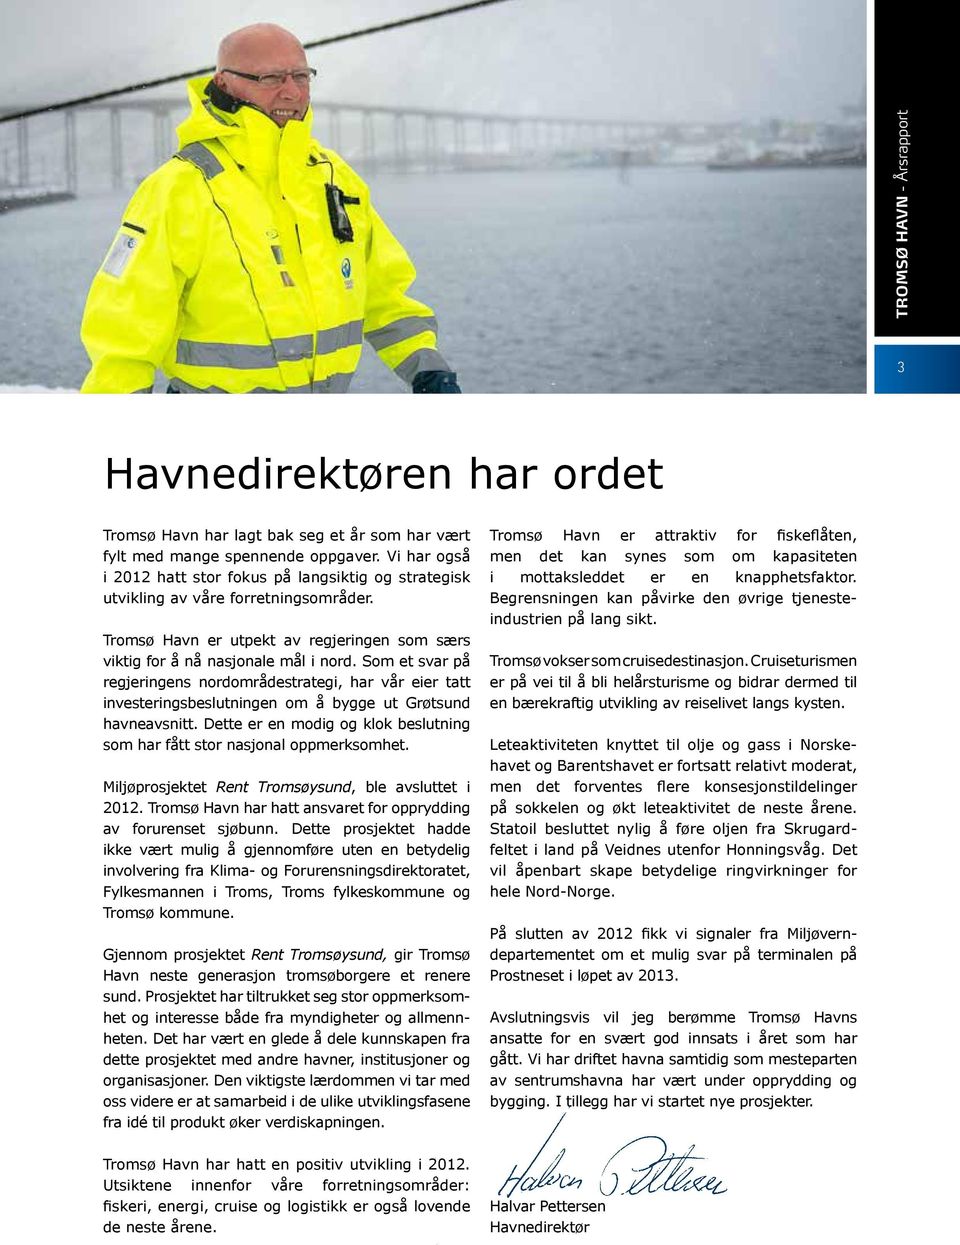 Som et svar på regjeringens nordområdestrategi, har vår eier tatt investeringsbeslutningen om å bygge ut Grøtsund havneavsnitt.